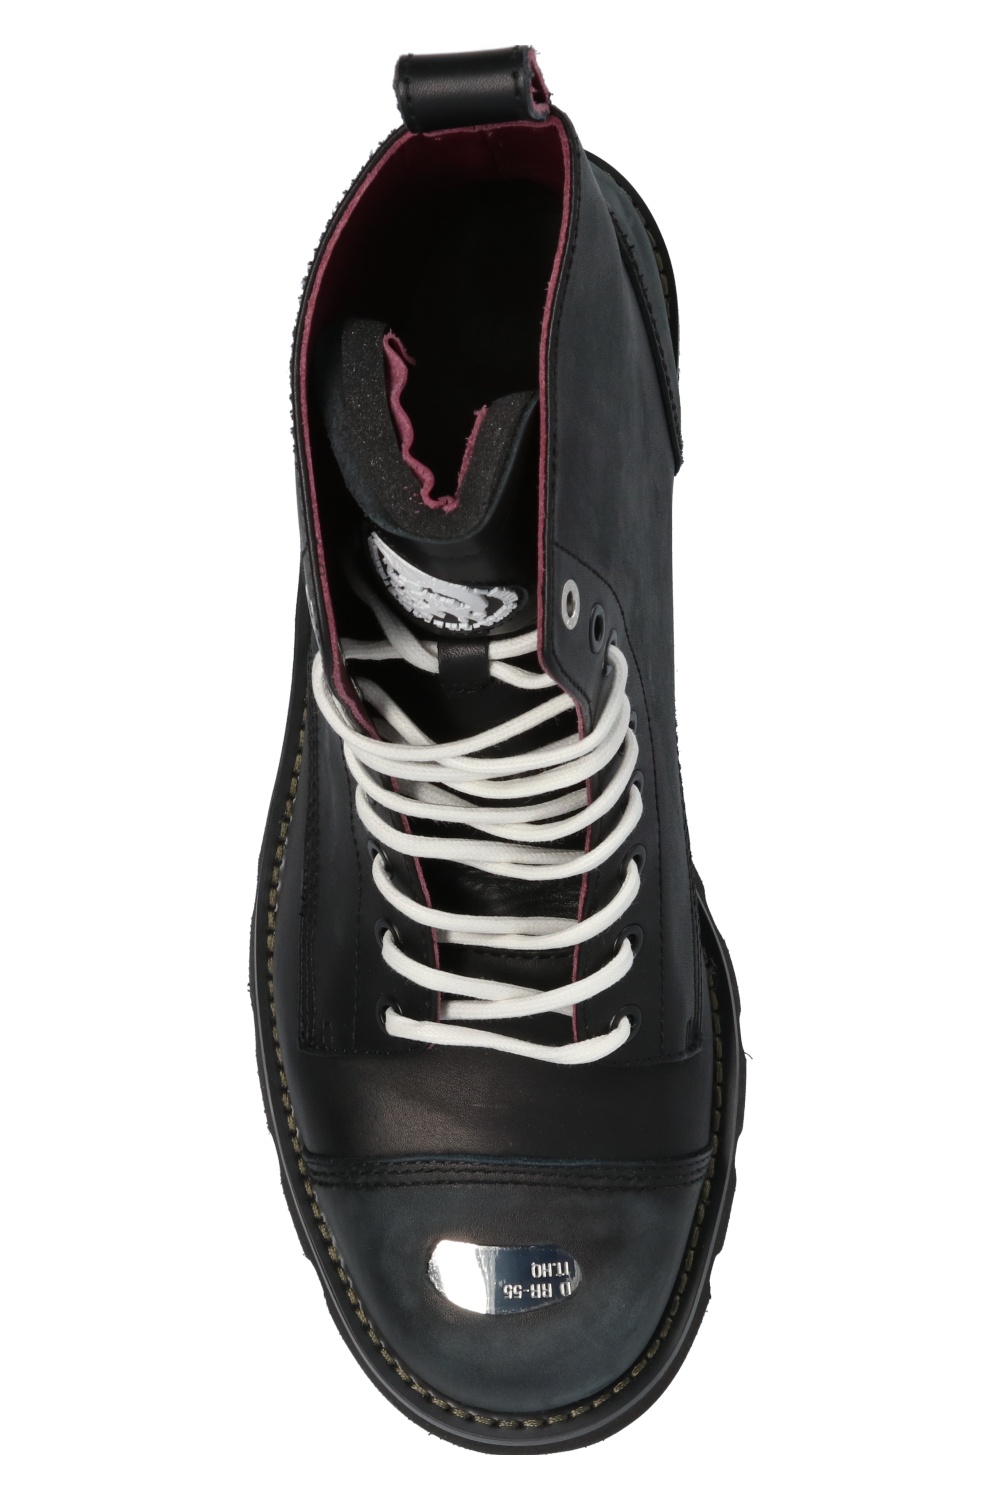 Diesel 'D-Konba' leather ankle boots | Men's Shoes | Vitkac